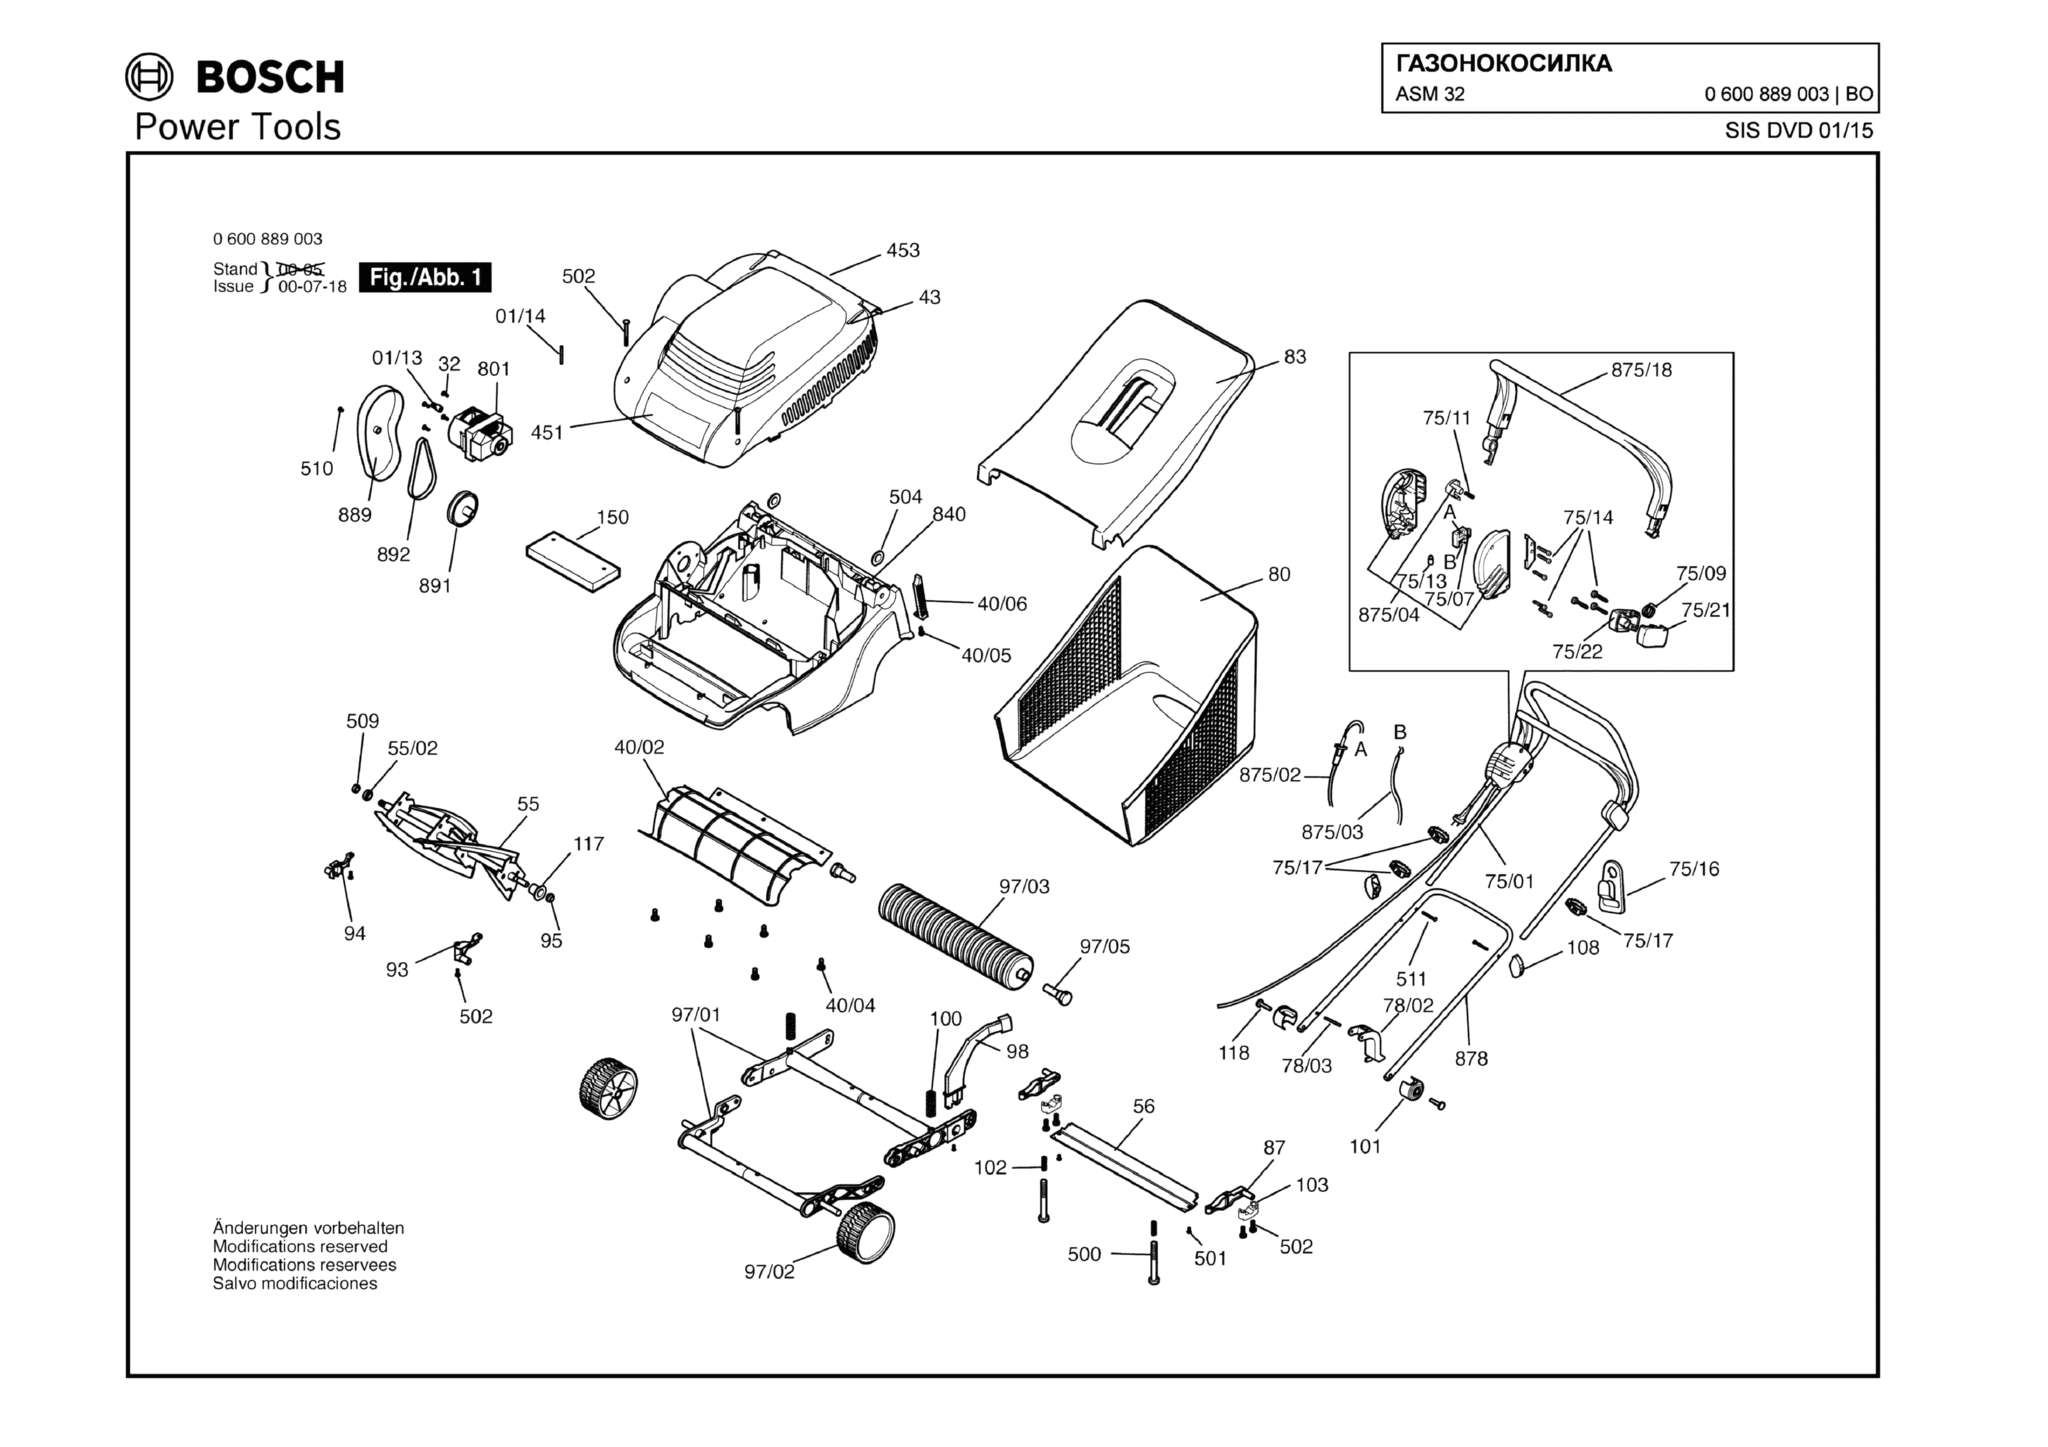 Запчасти, схема и деталировка Bosch ASM 32 (ТИП 0600889003)